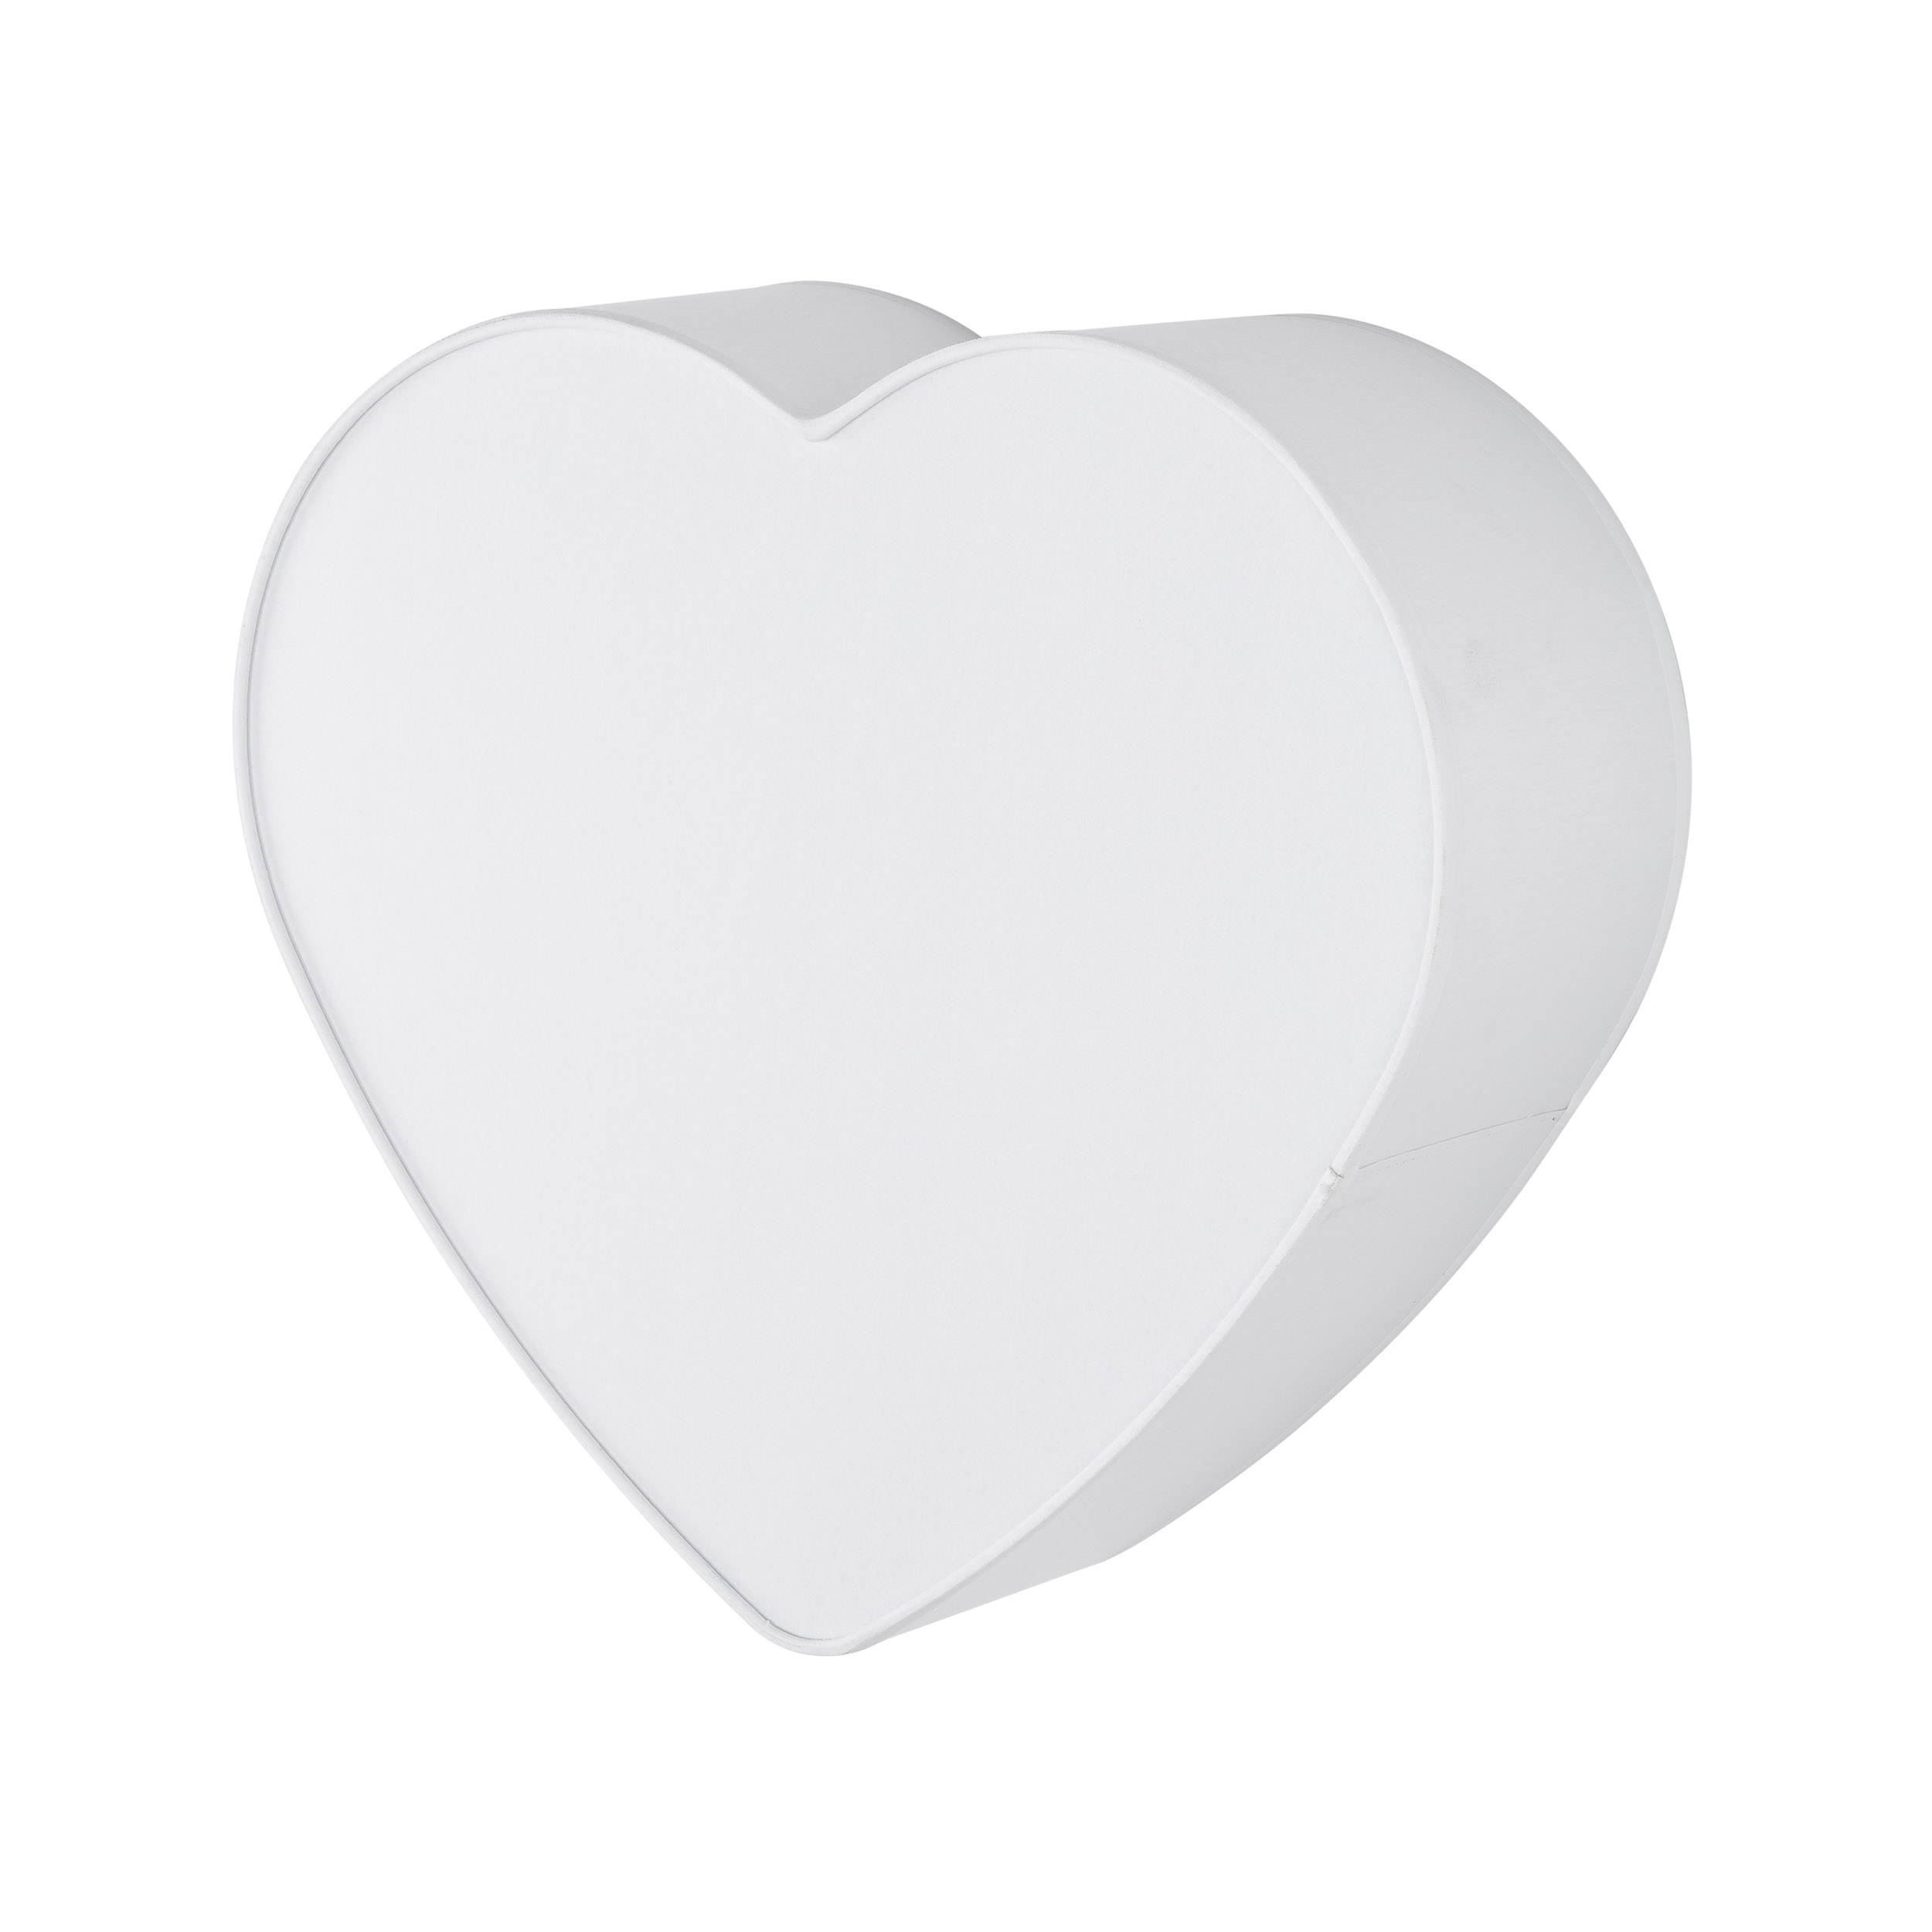 Lampa kinkiet w formie serca biay 2x15W HEART 5925